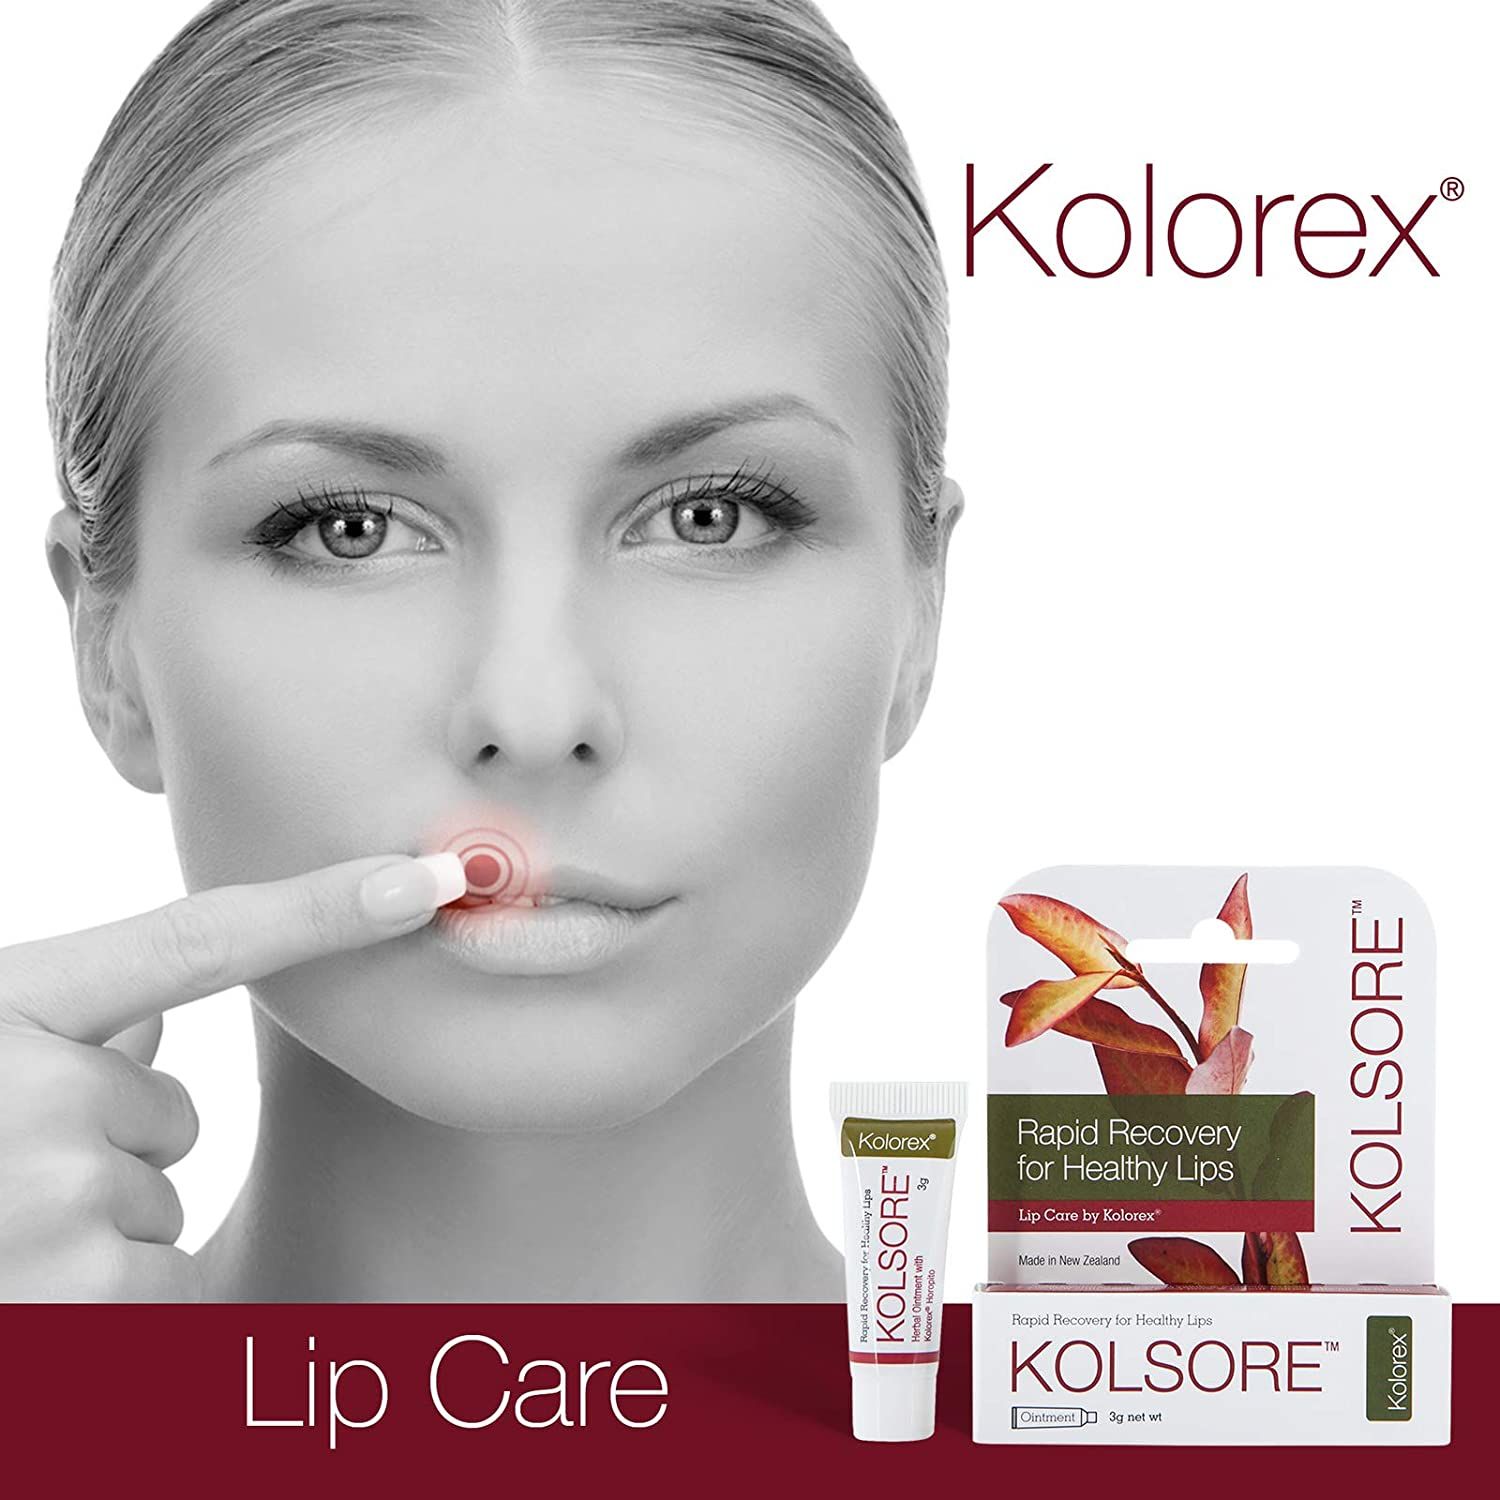 Loại bỏ chàm môi, herpes môi: Giải pháp hiệu quả từ Kolorex Kolsore Lip Care Ointment